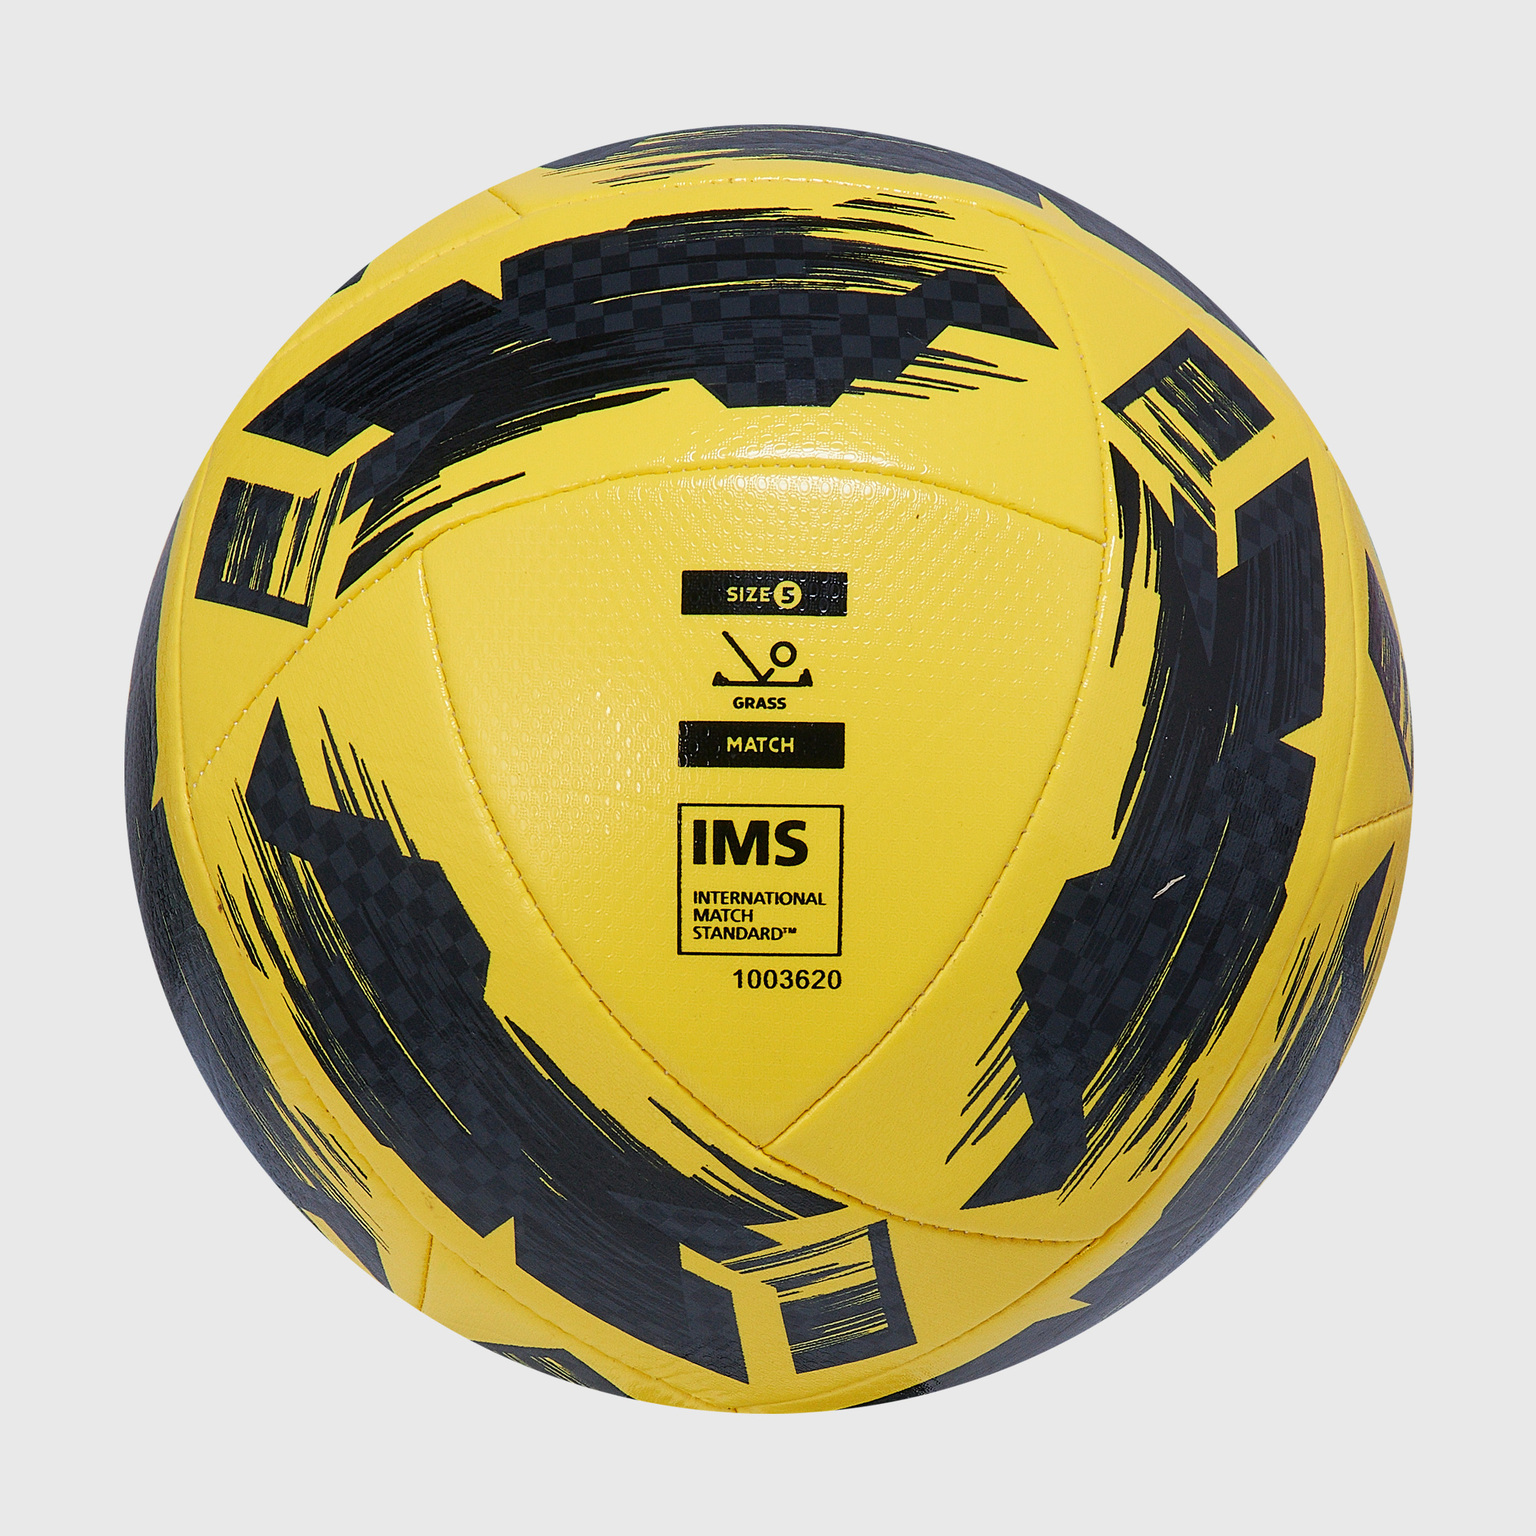 Футбольный мяч Umbro Neo Swerve 26485U-157